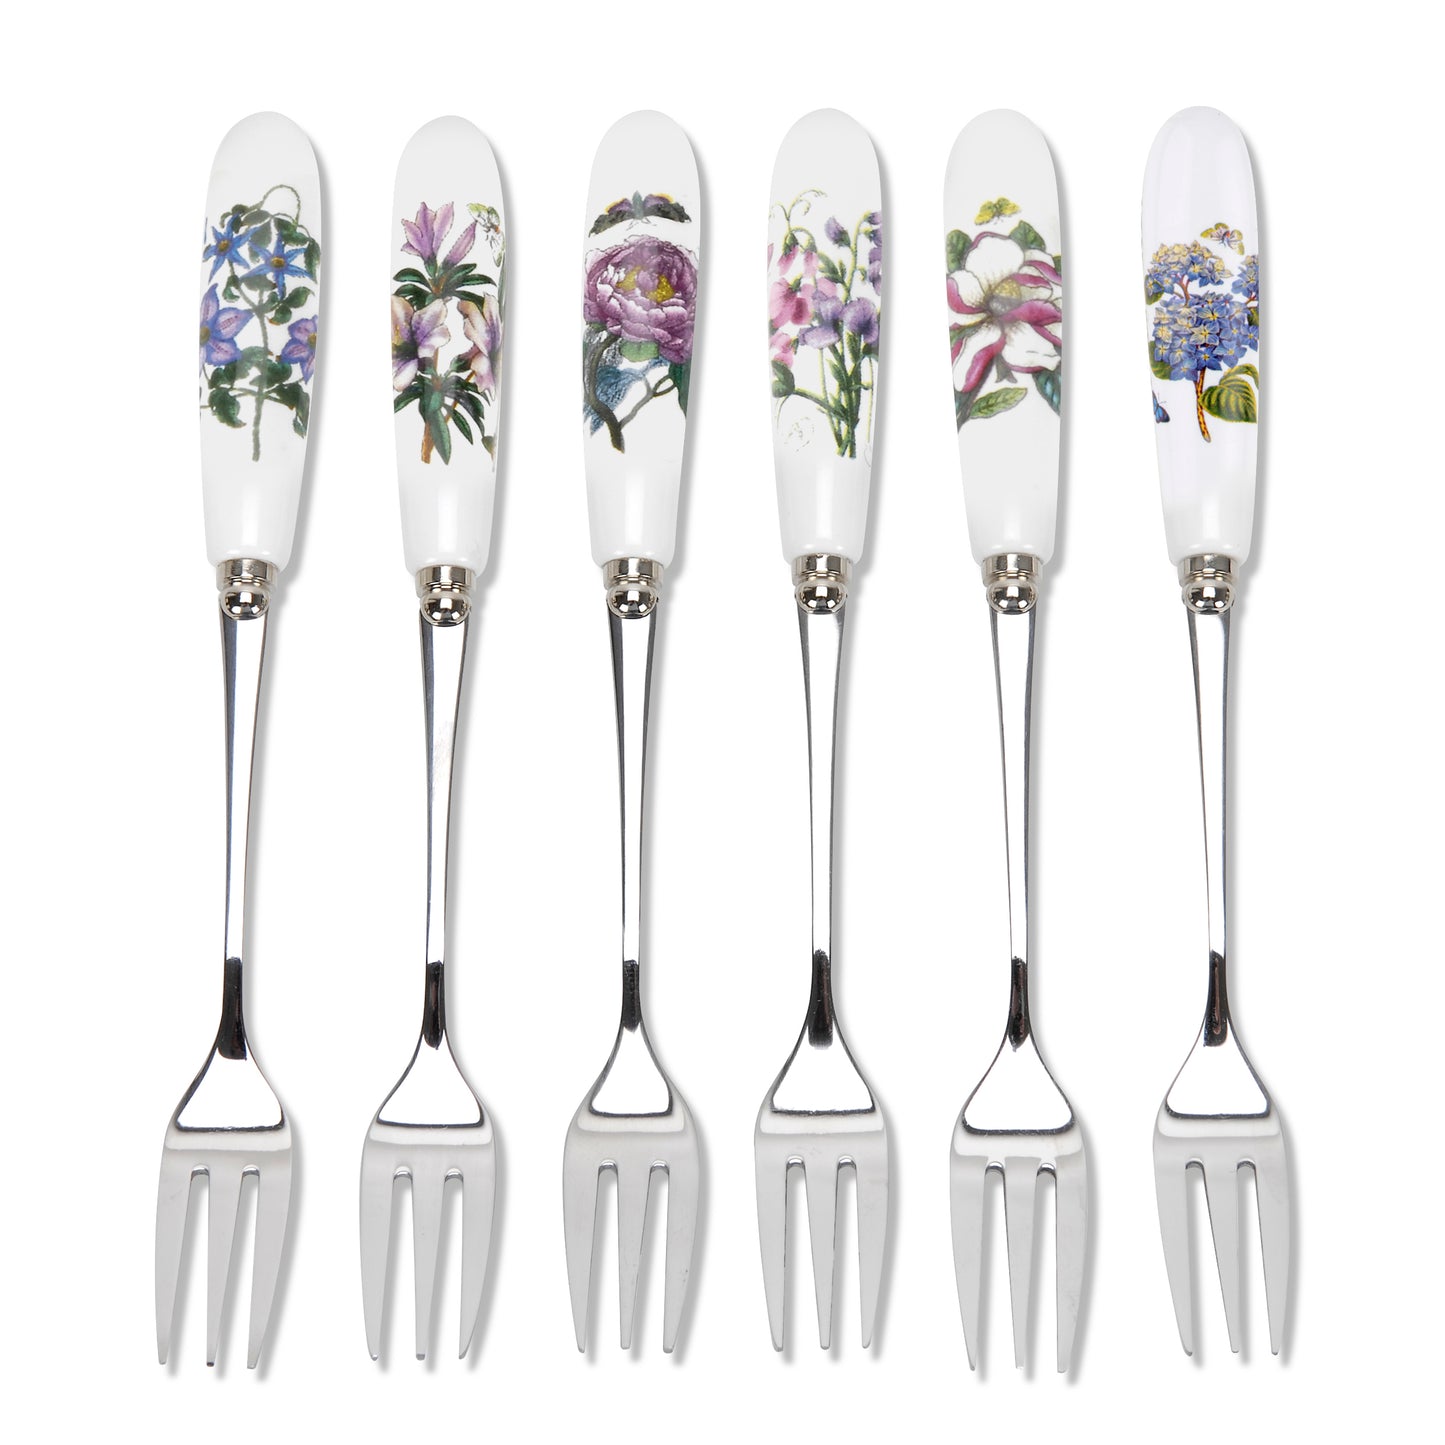 Portmeirion Botanic Garden Pastry Forks set of 6